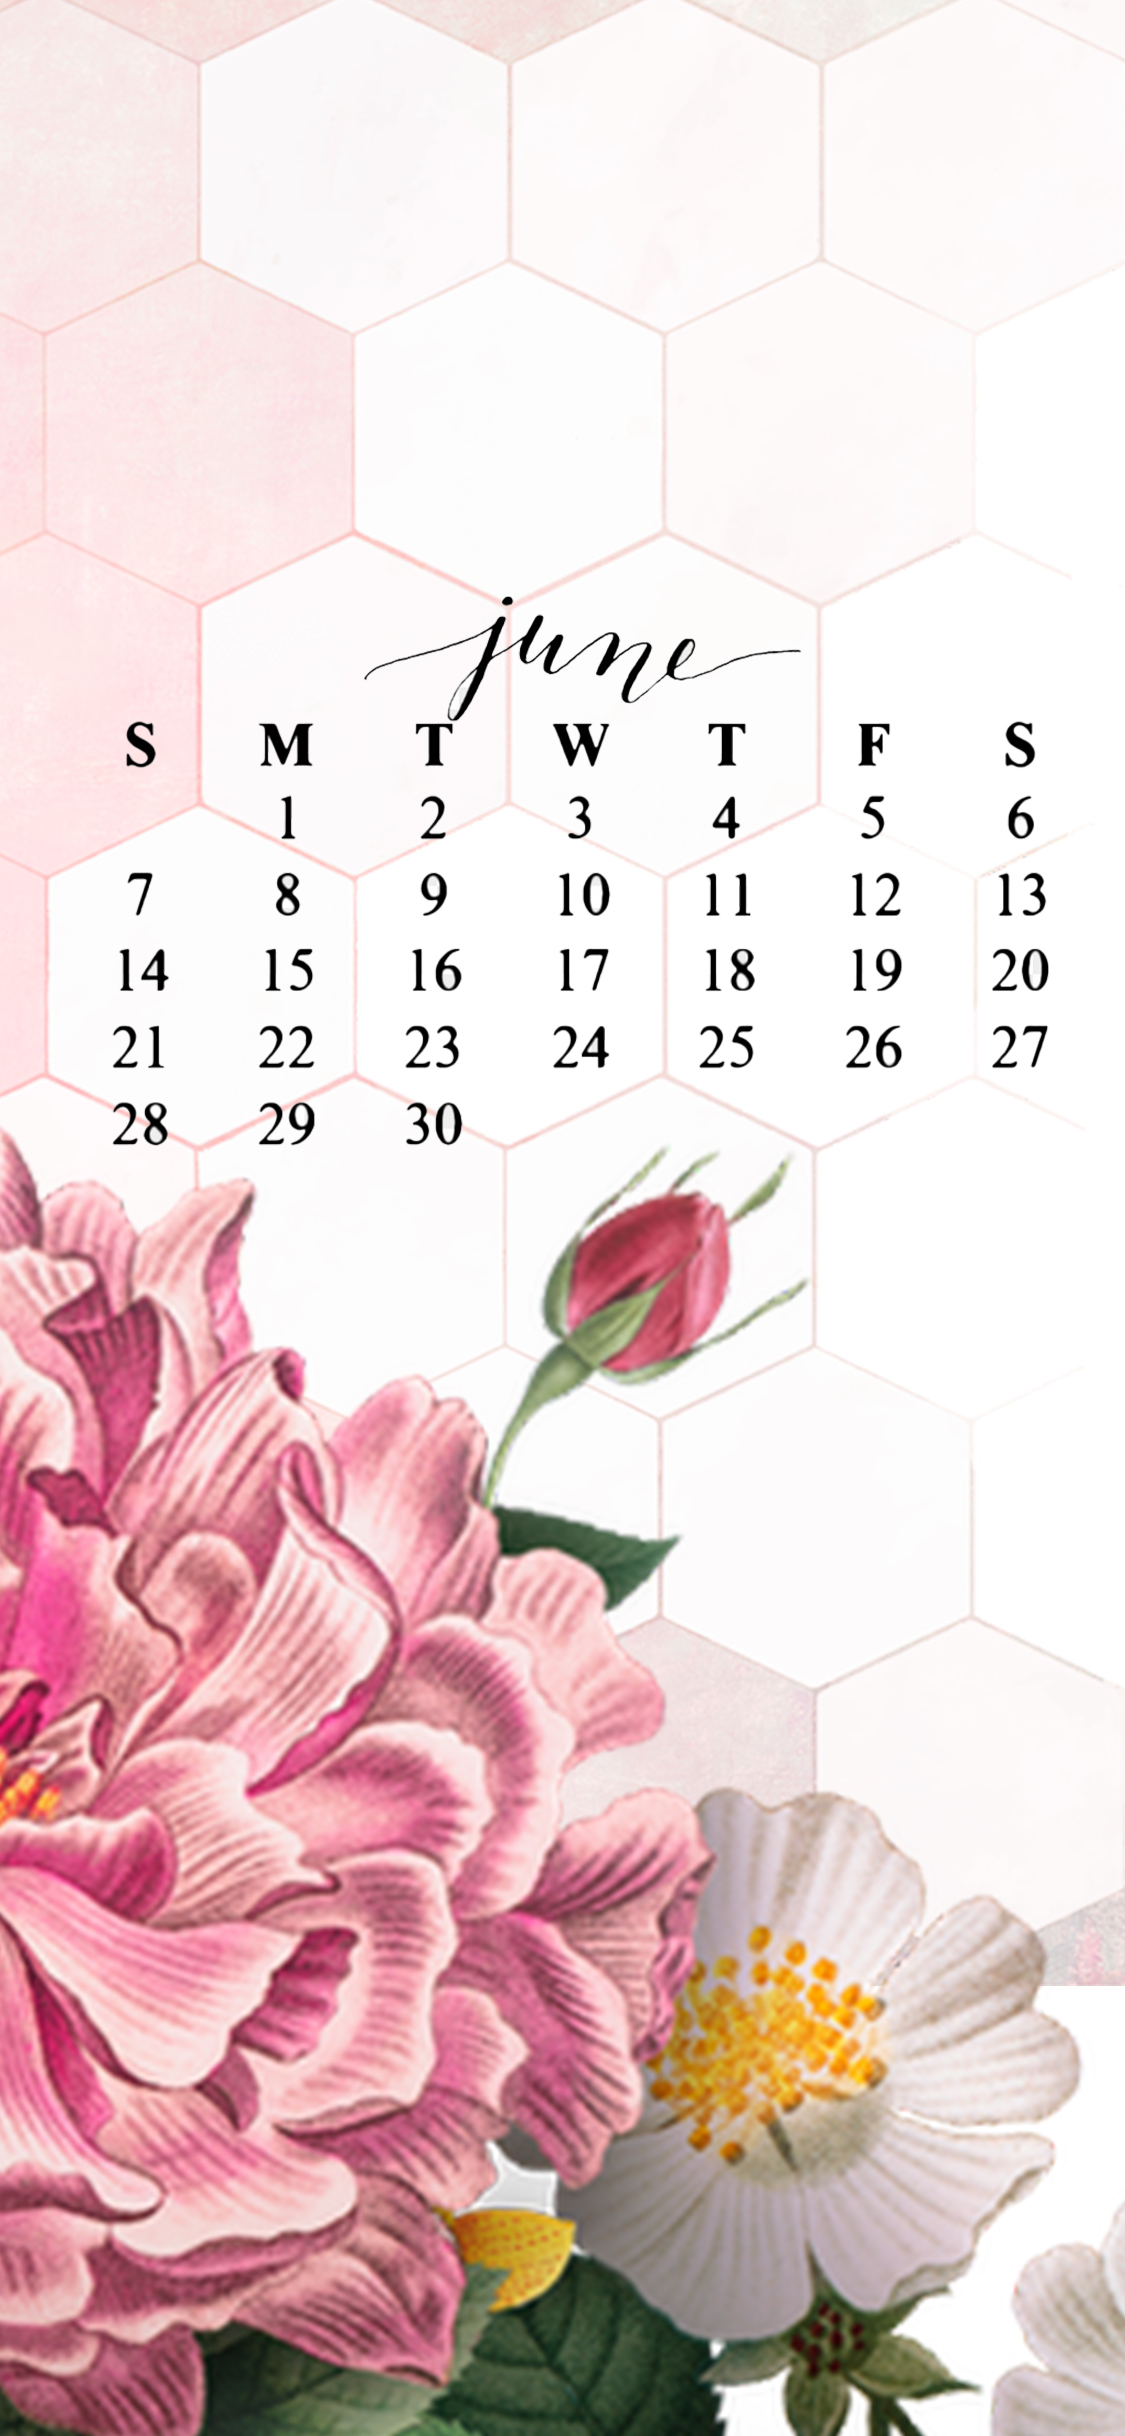 Happy June - Free iPhone iPad Desktop Wallpaper - Stage Presents